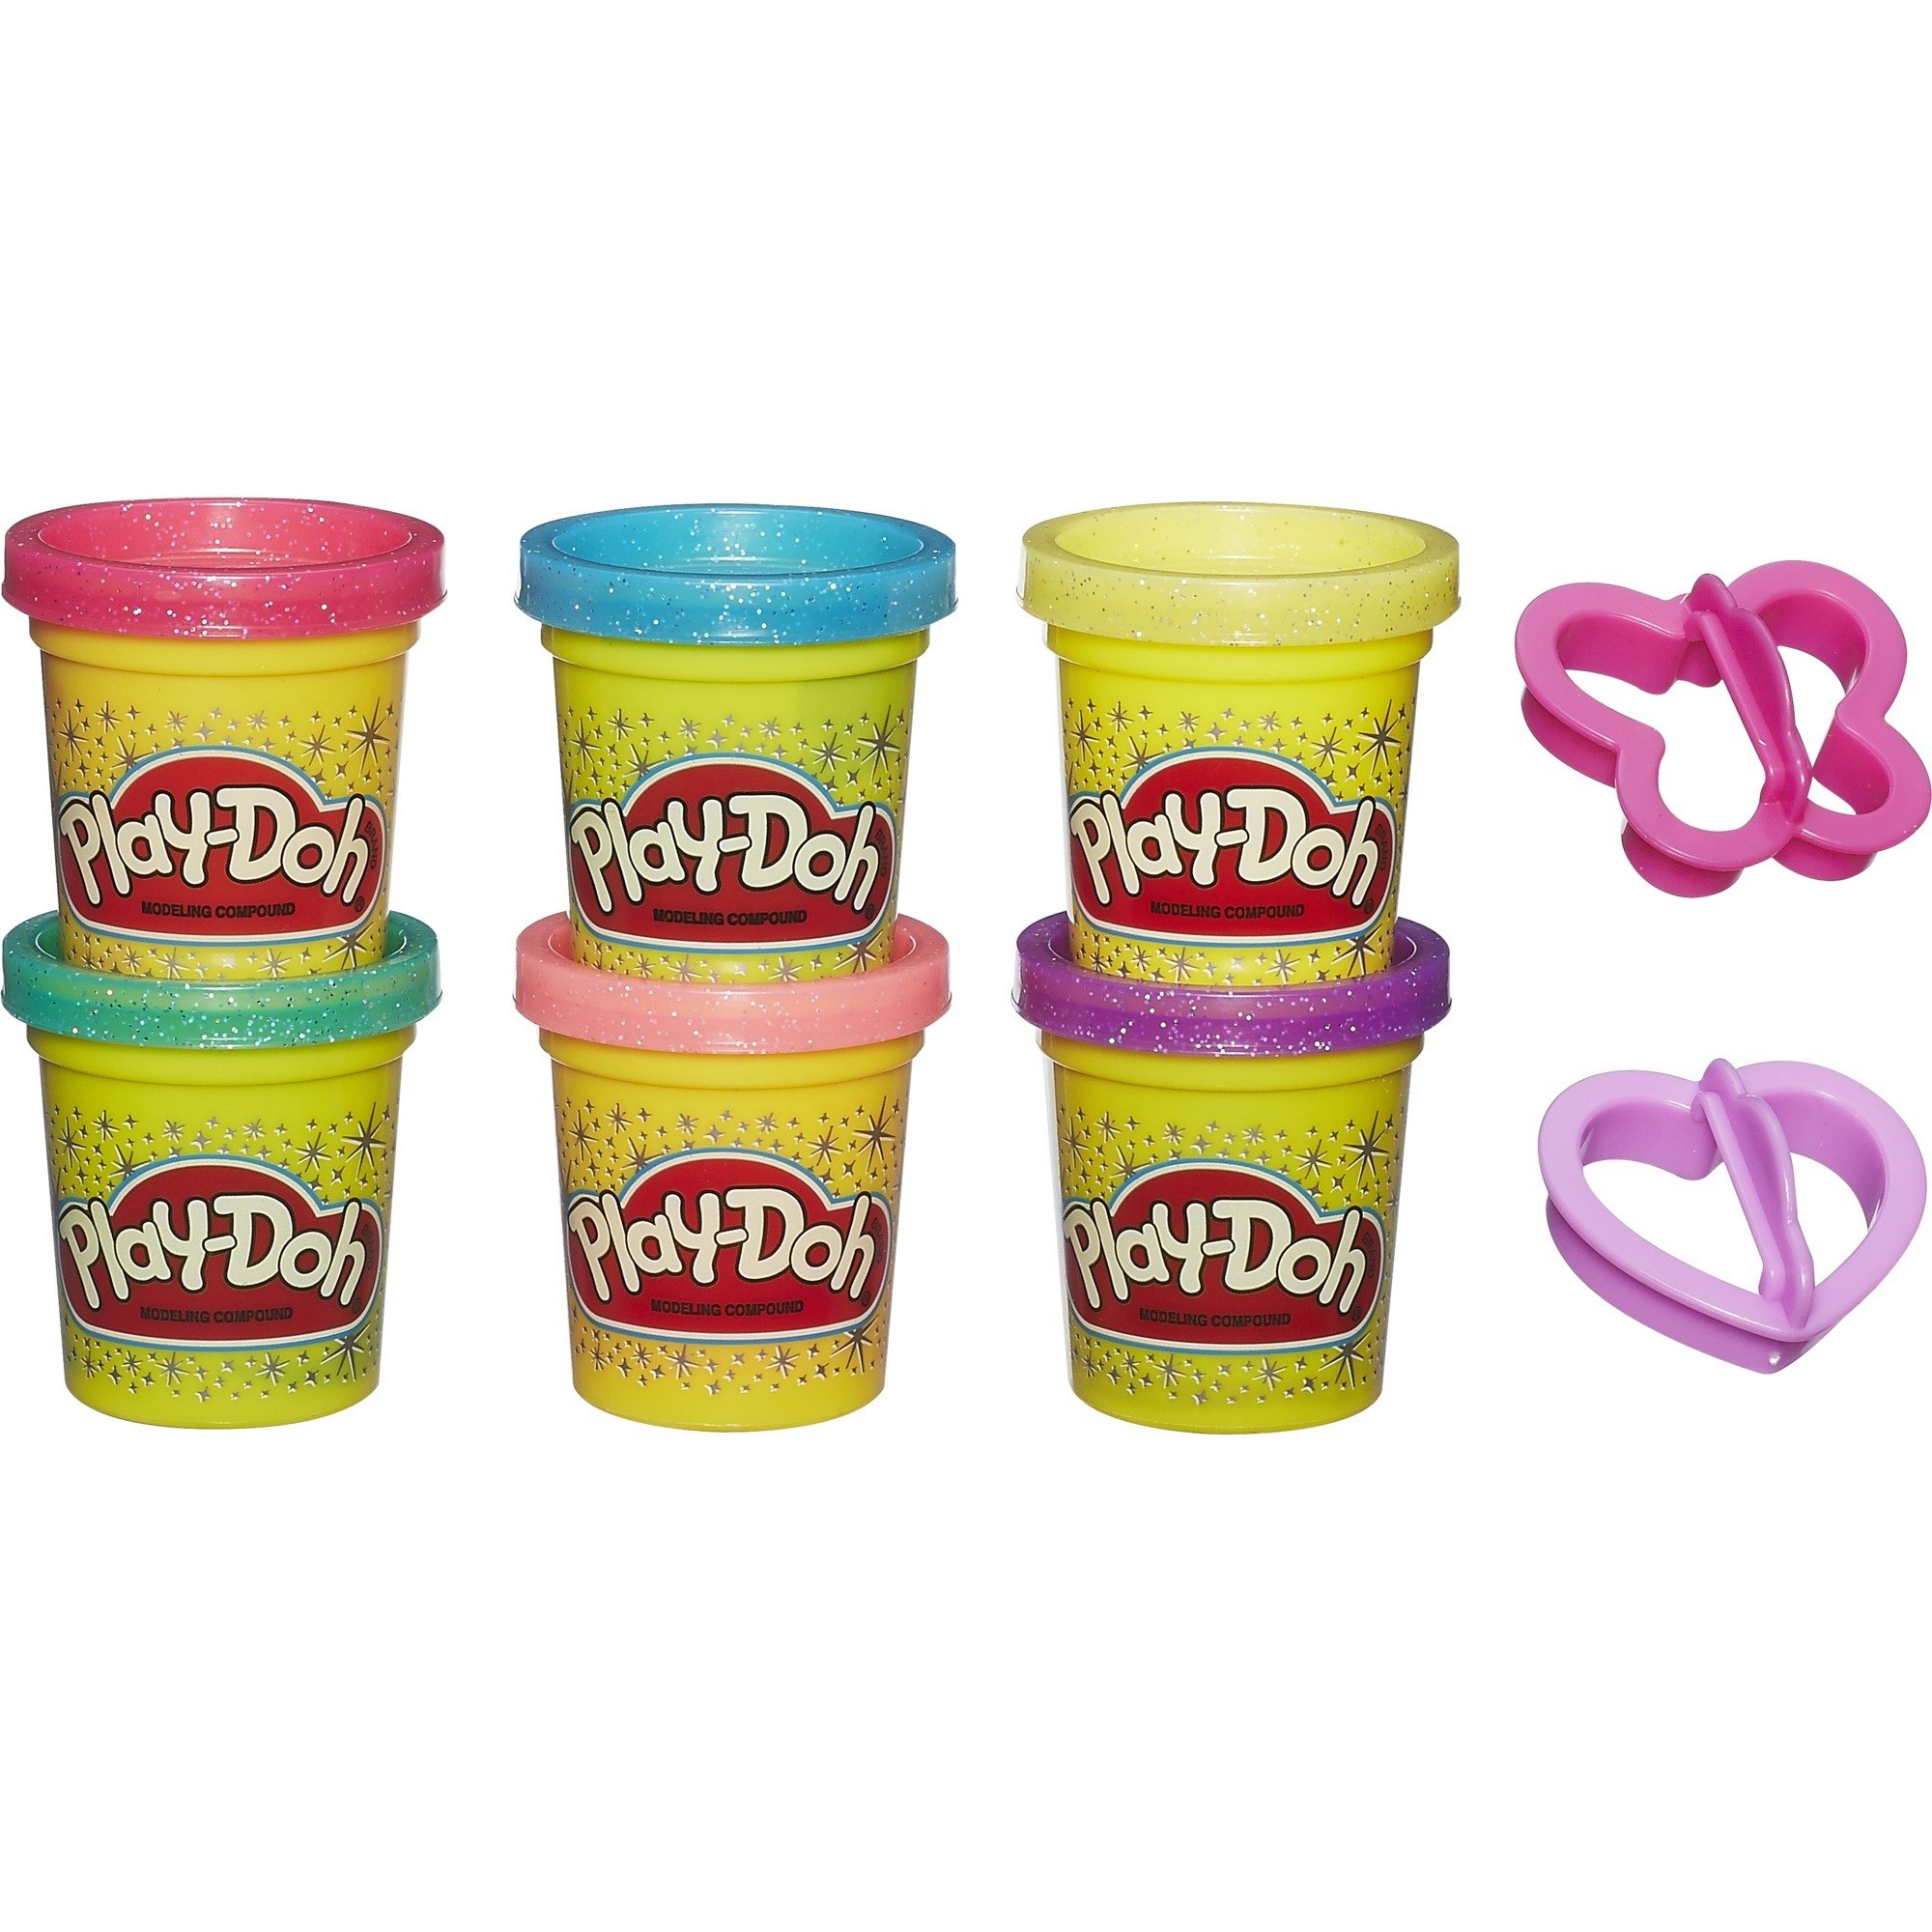 Image of Alternate - Play-Doh Glitzerknete, Kneten online einkaufen bei Alternate